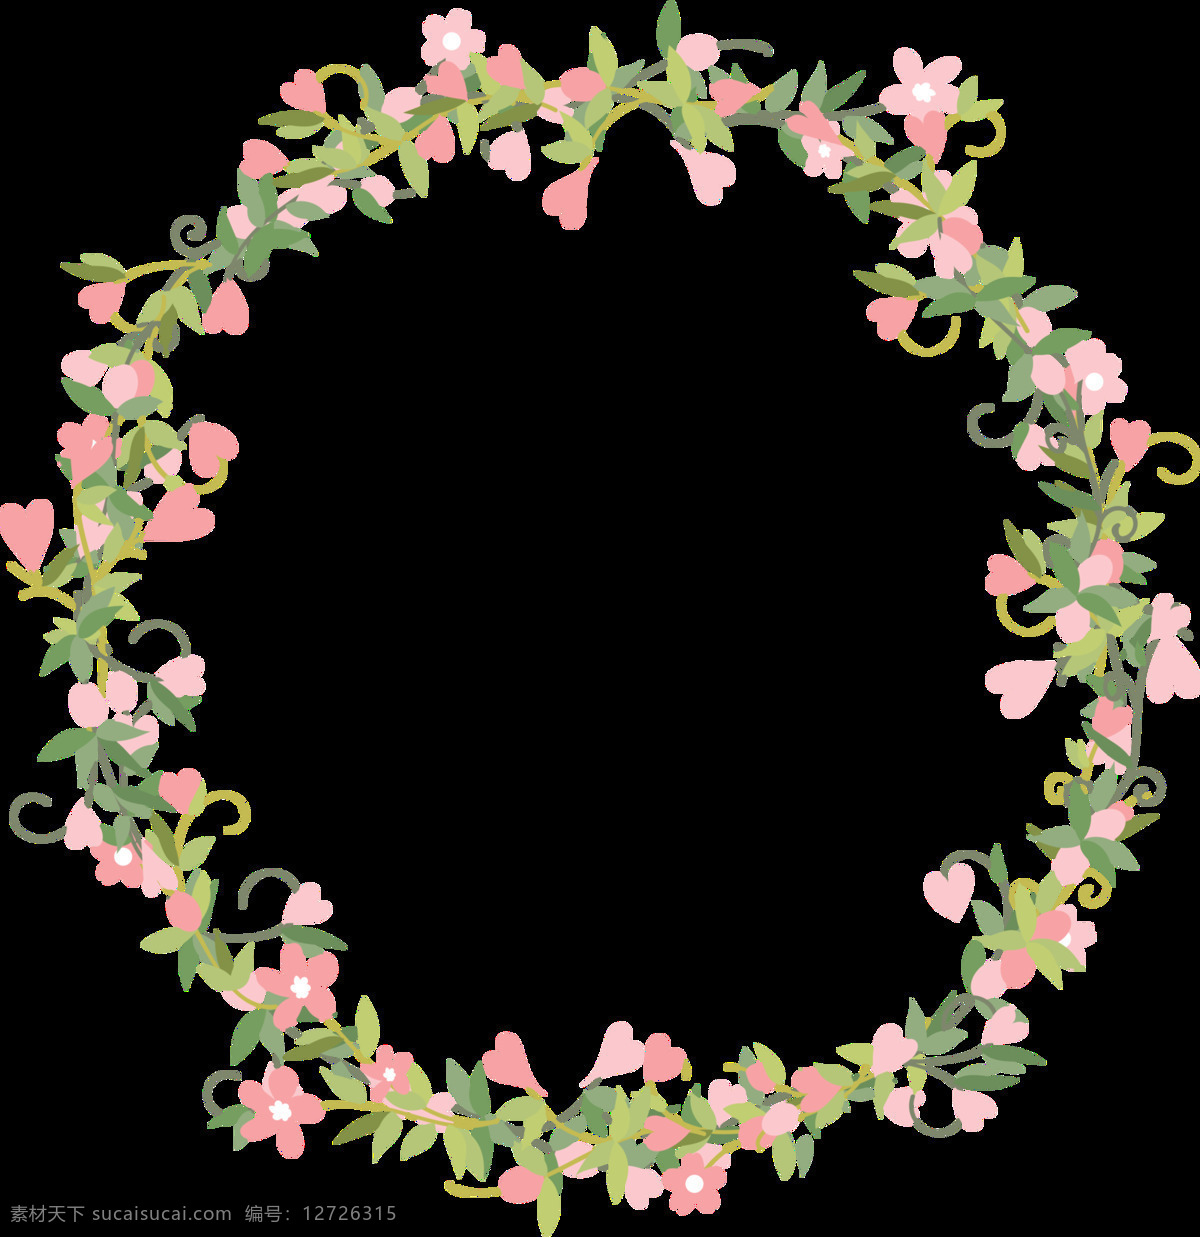 清新 少女 心 粉色 花朵 手绘 花环 装饰 元素 粉色花朵 飘落的花瓣 手绘花环 手绘水彩 手绘素材 素材唯美 鲜花